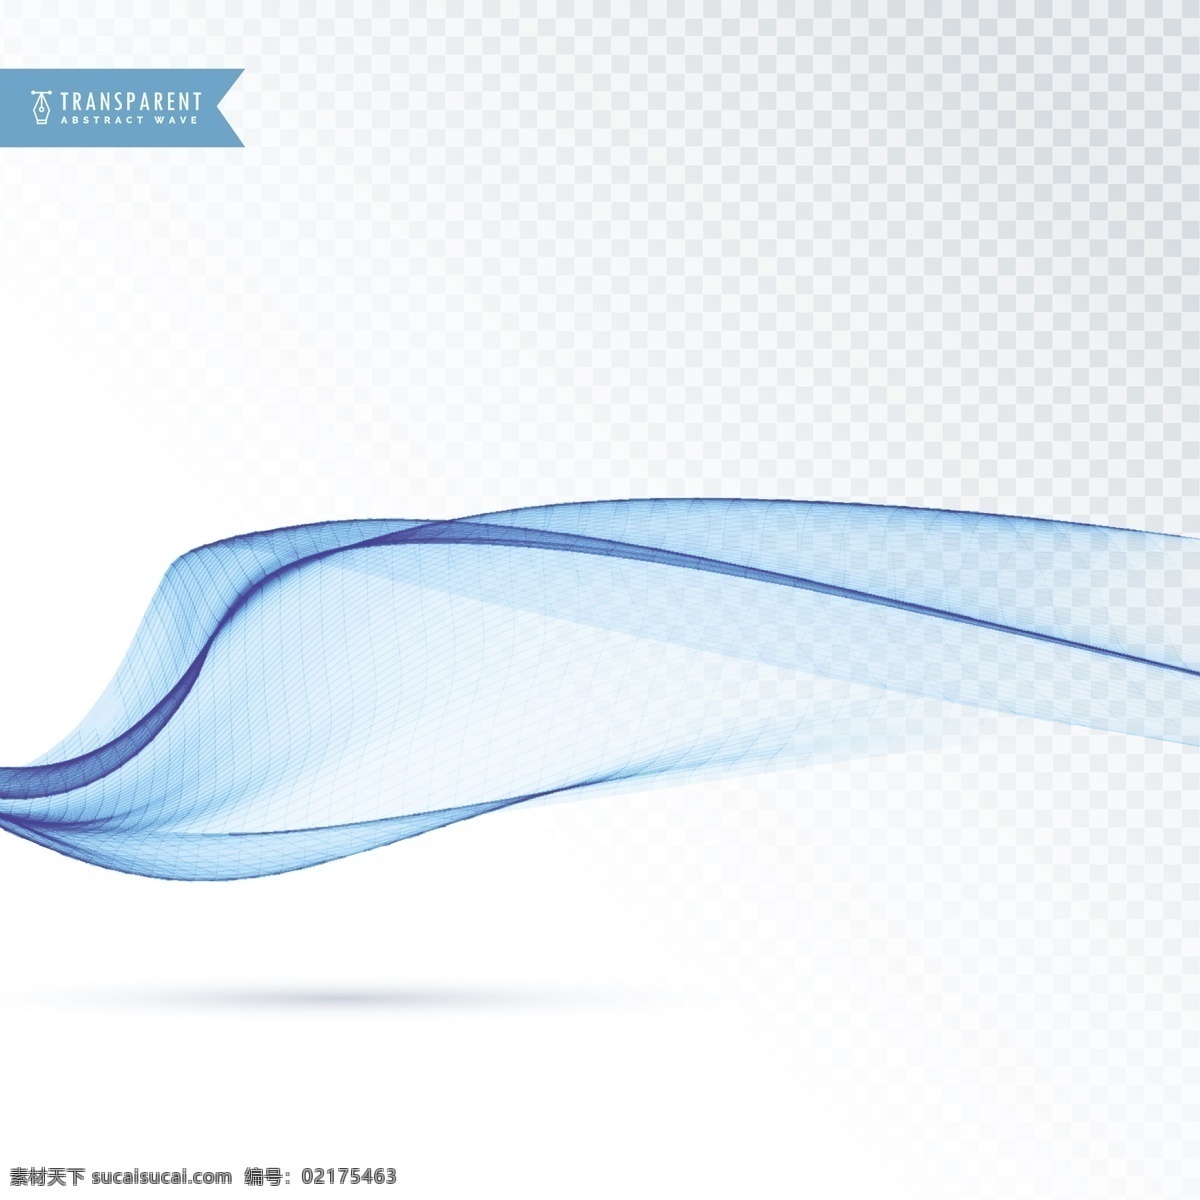 抽象的形状 波浪状的纹理 背景 商业 抽象 线条 波浪 蓝色 形状 烟雾 优雅 能量 漩涡 现代 效果 透明 运动 柔软 动态